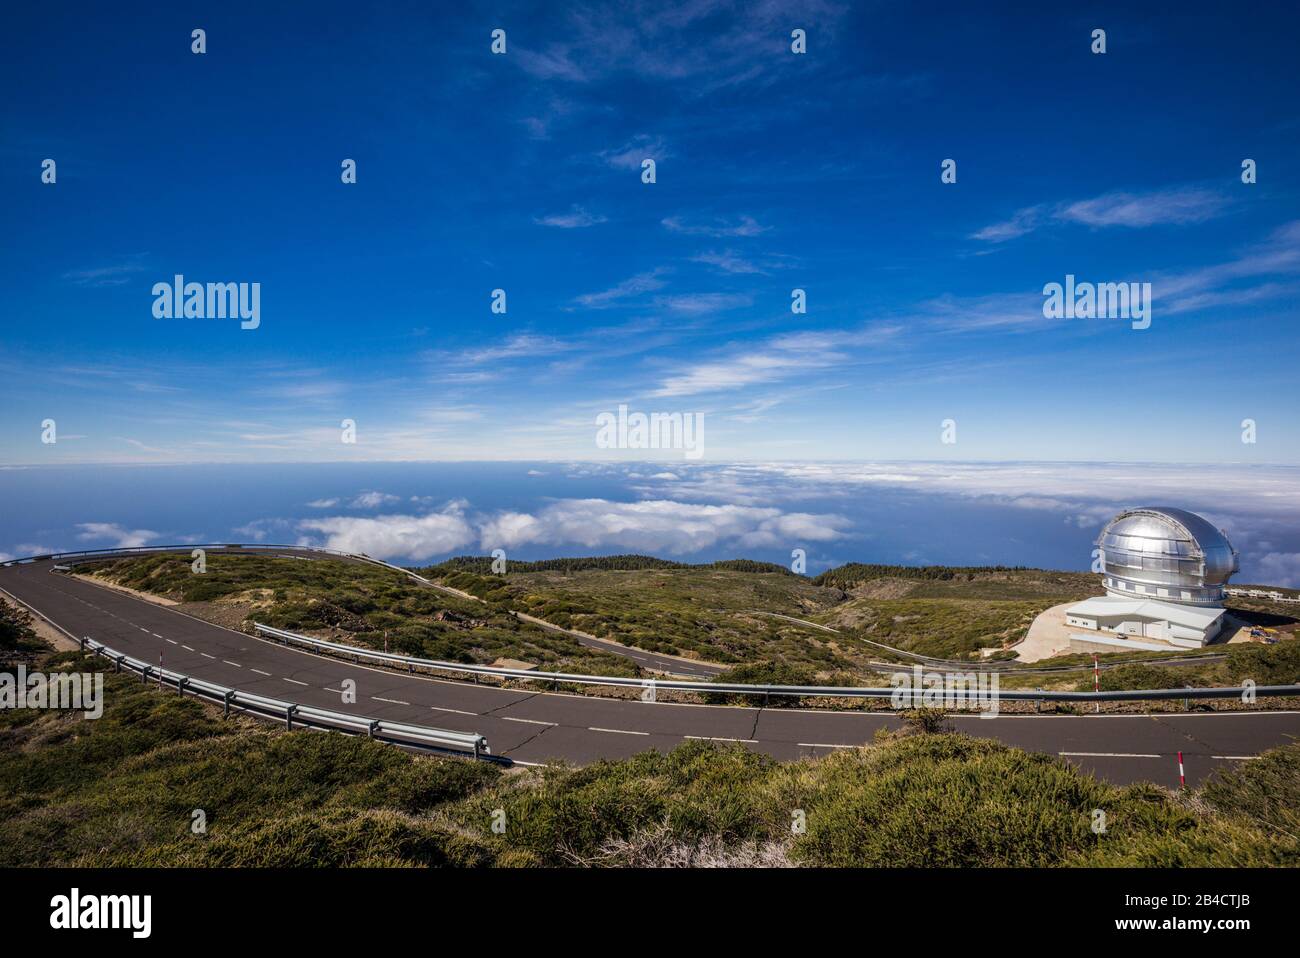 Spain, Canary Islands, La Palma Island, Parque Nacional Caldera de Taburiente national park,  Roque de los Muchachos Observatory, Gran Telescopio Canario, GTC, one of the world's largest telescopes Stock Photo